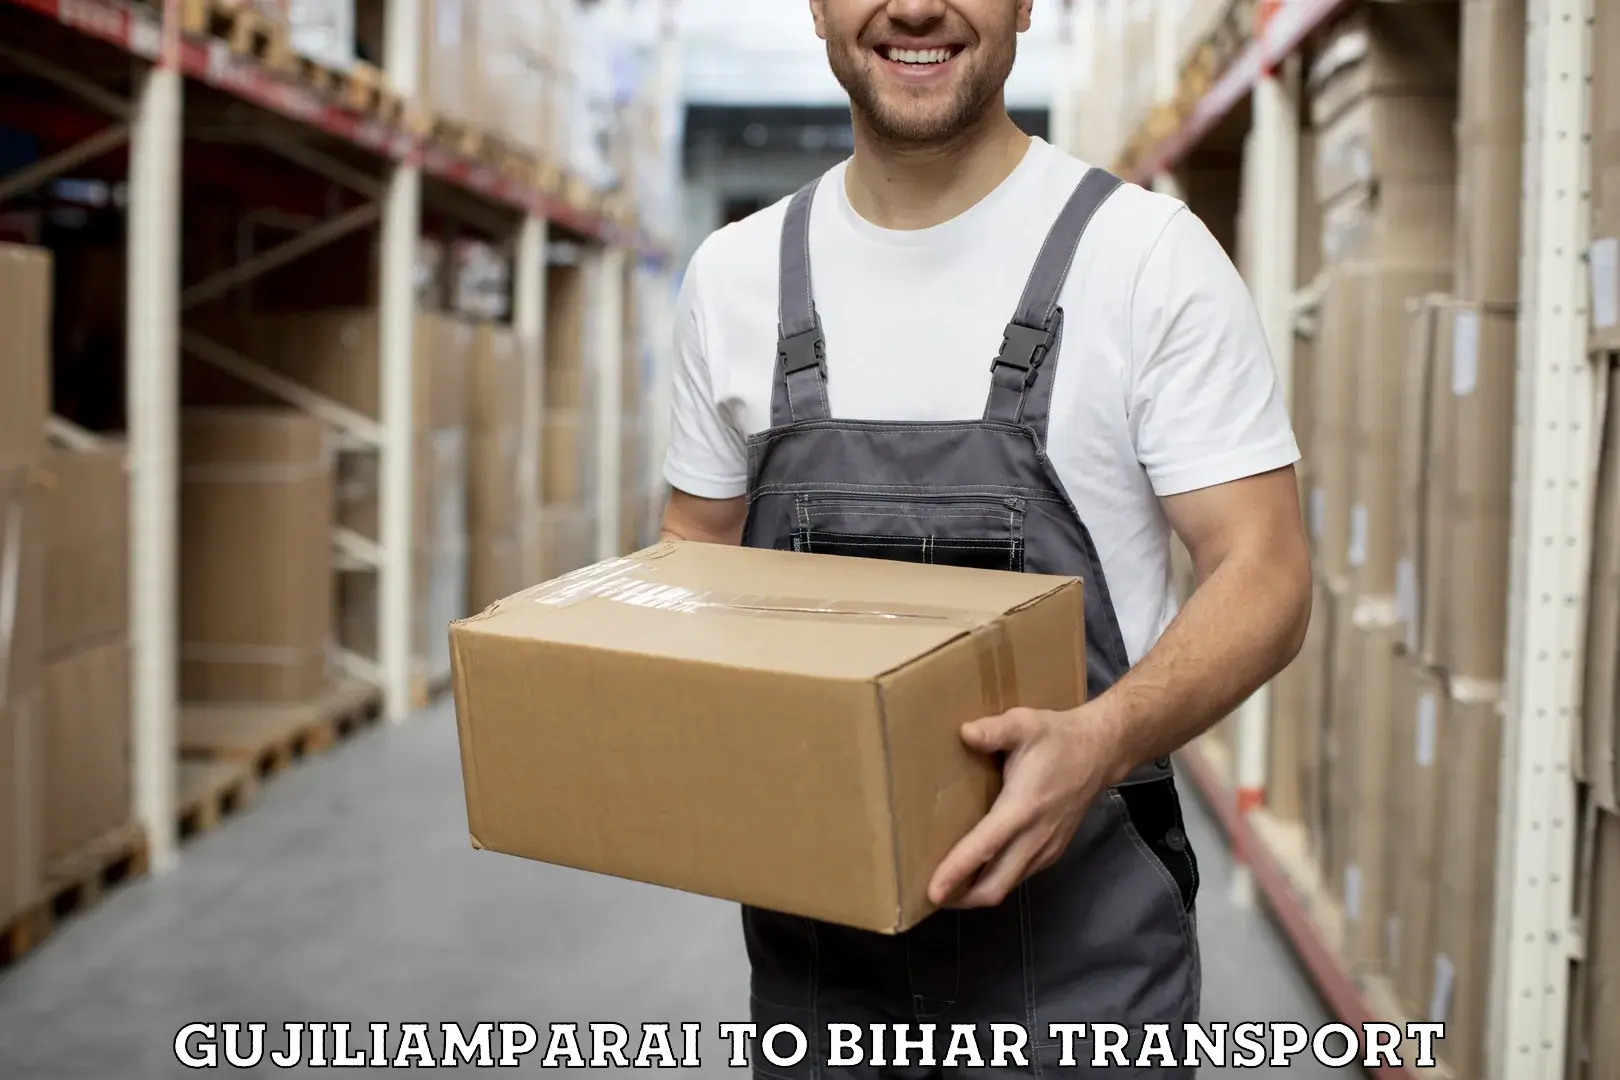 Furniture transport service Gujiliamparai to Purnia